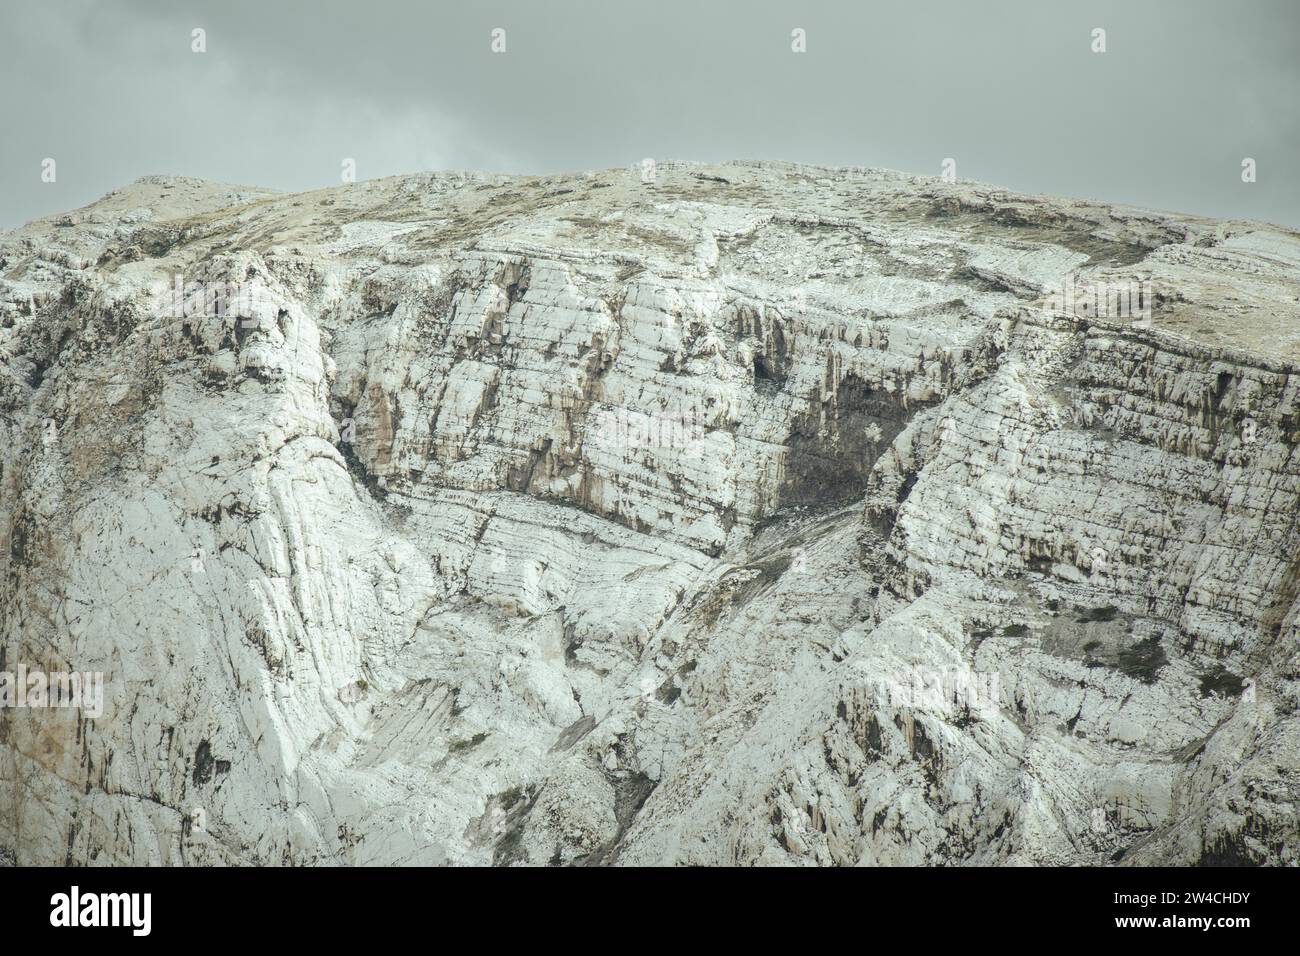 Formazione rocciosa, altopiani andini, la Oroya, Perù Foto Stock